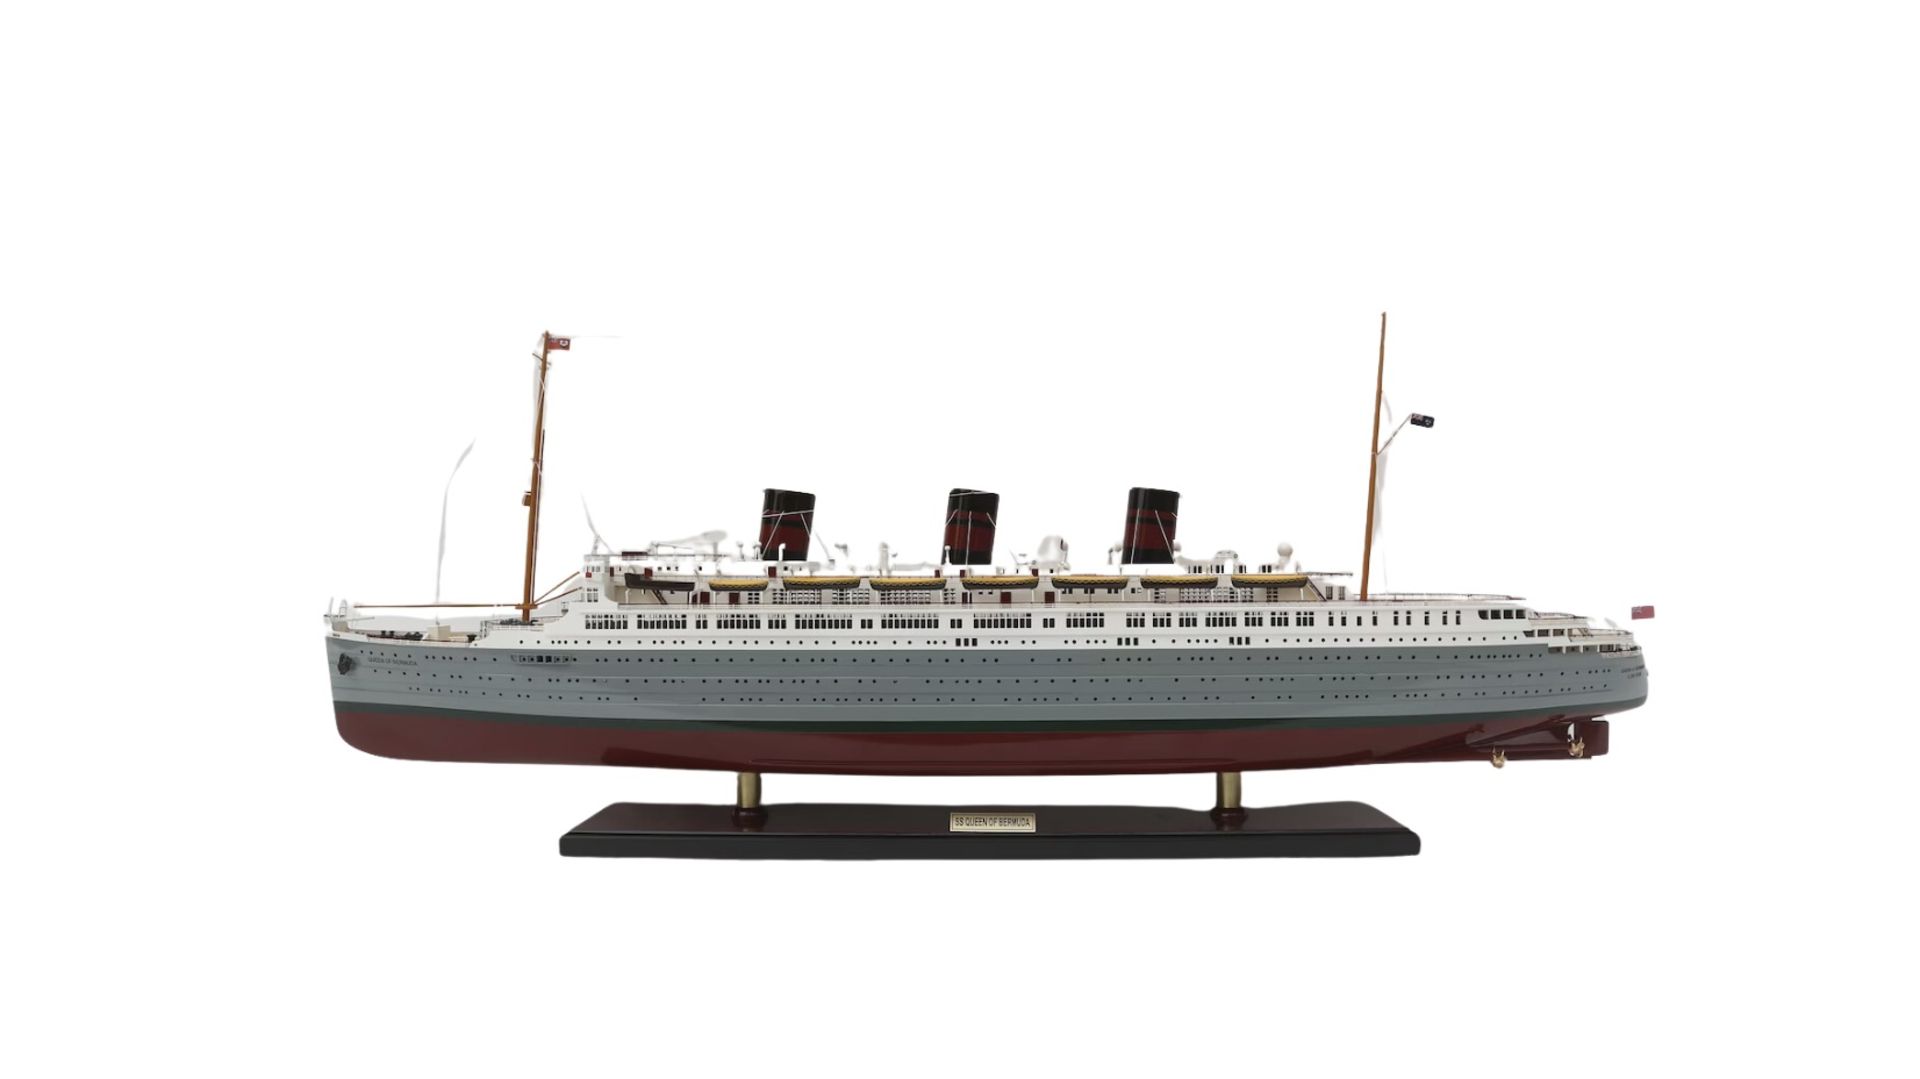 SS Queen of Bermuda Wooden Model Desk Scale Display